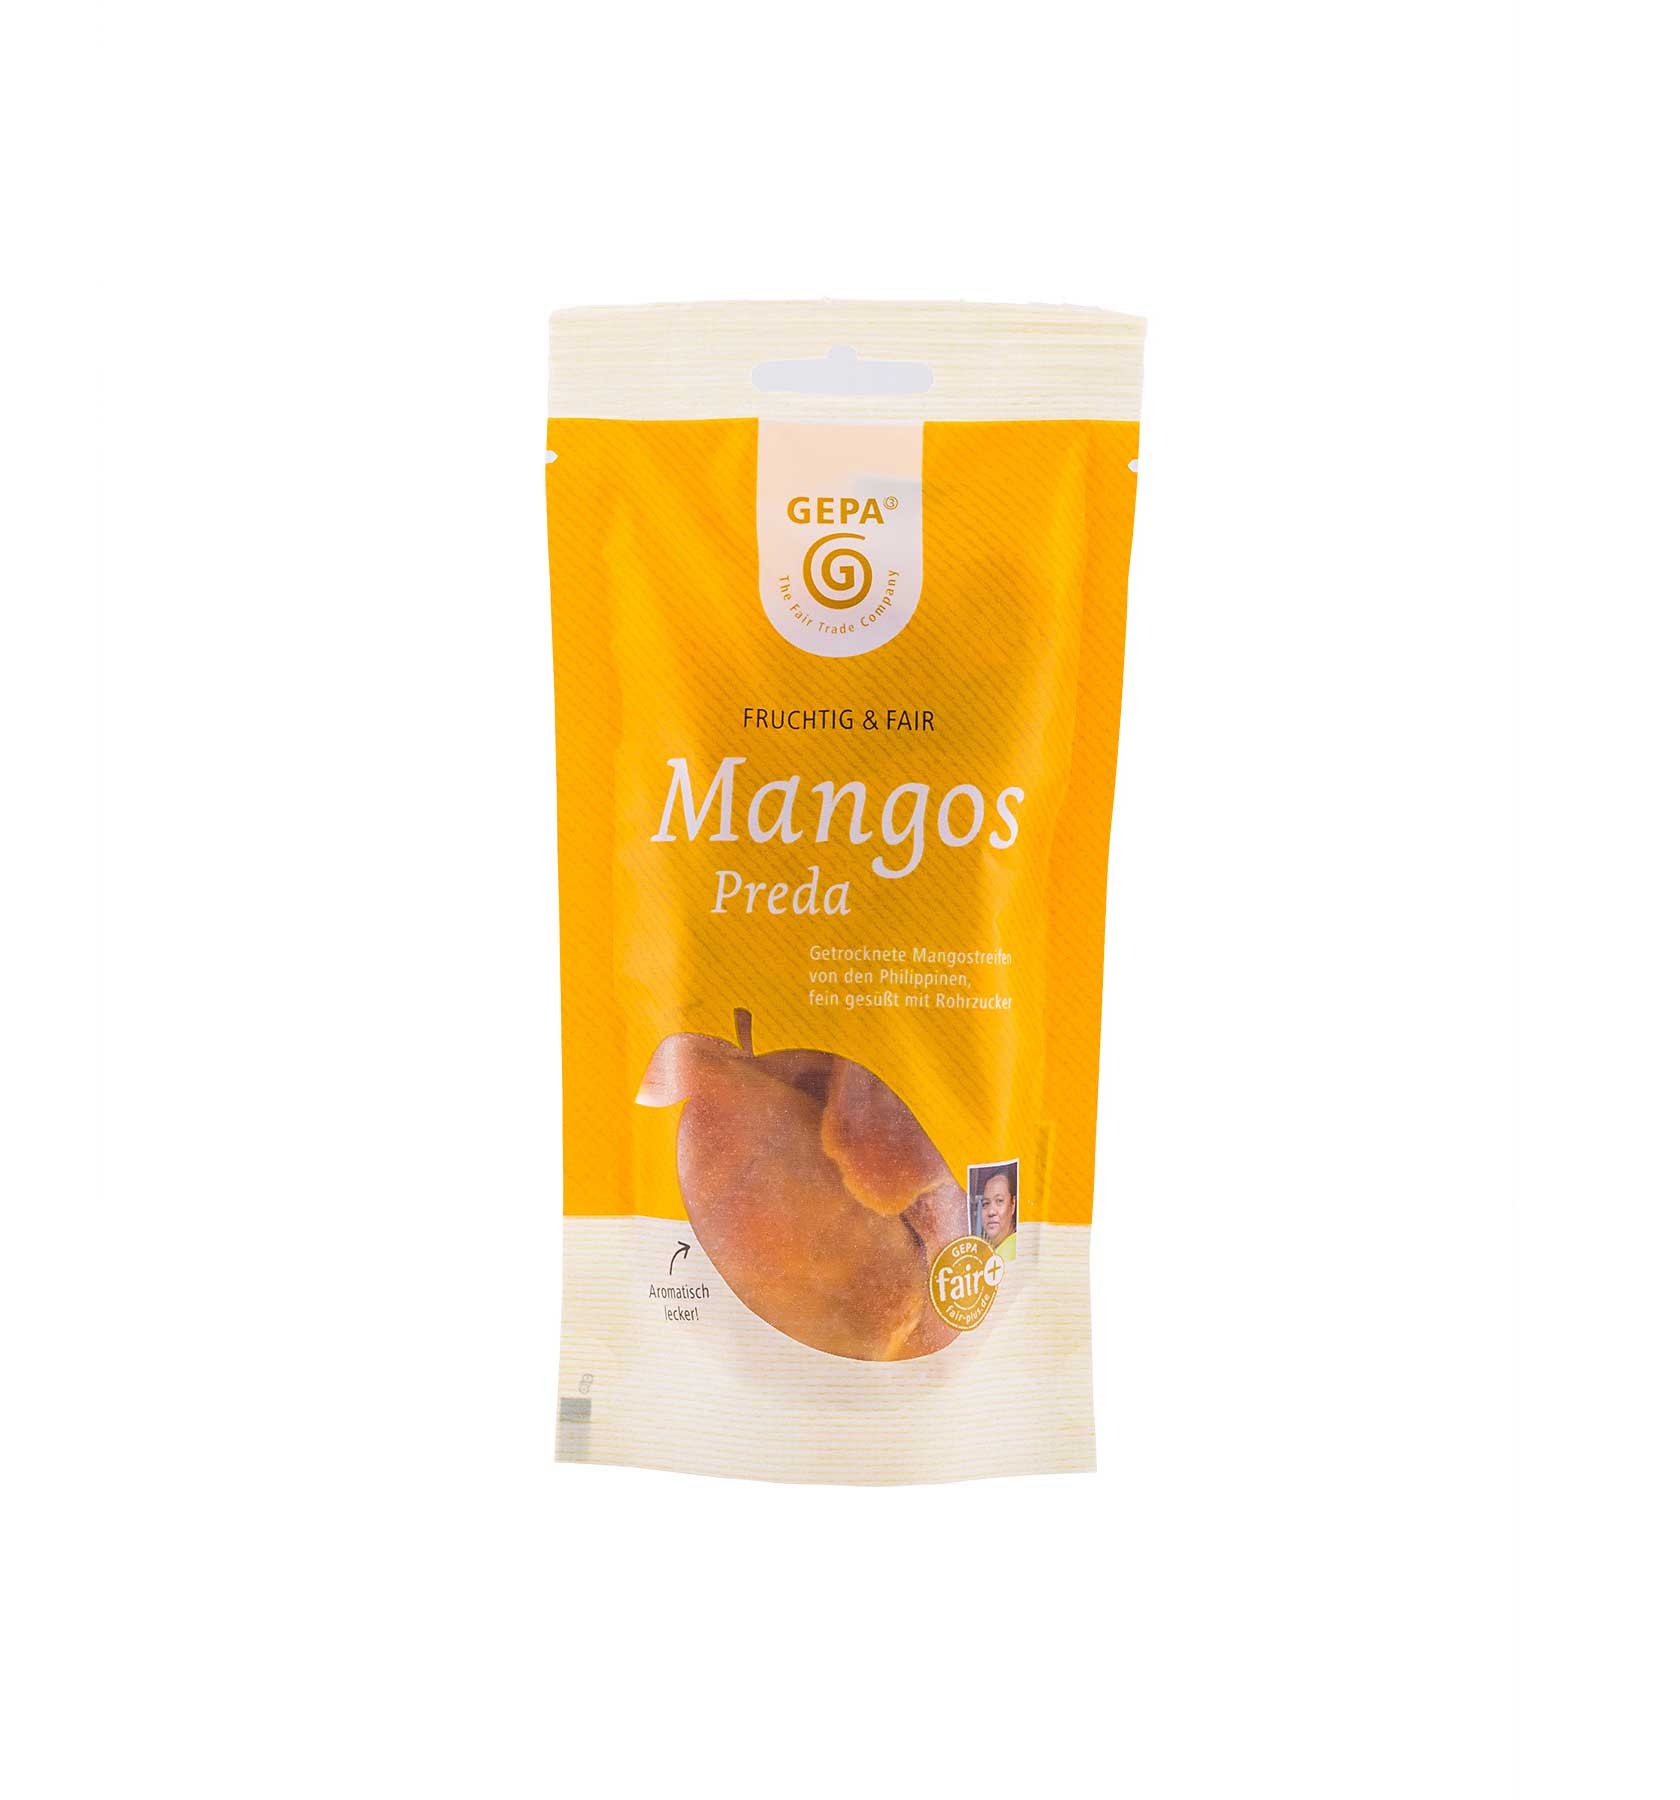 Mangos (getrocknete Mango-Streifen) von GEPA